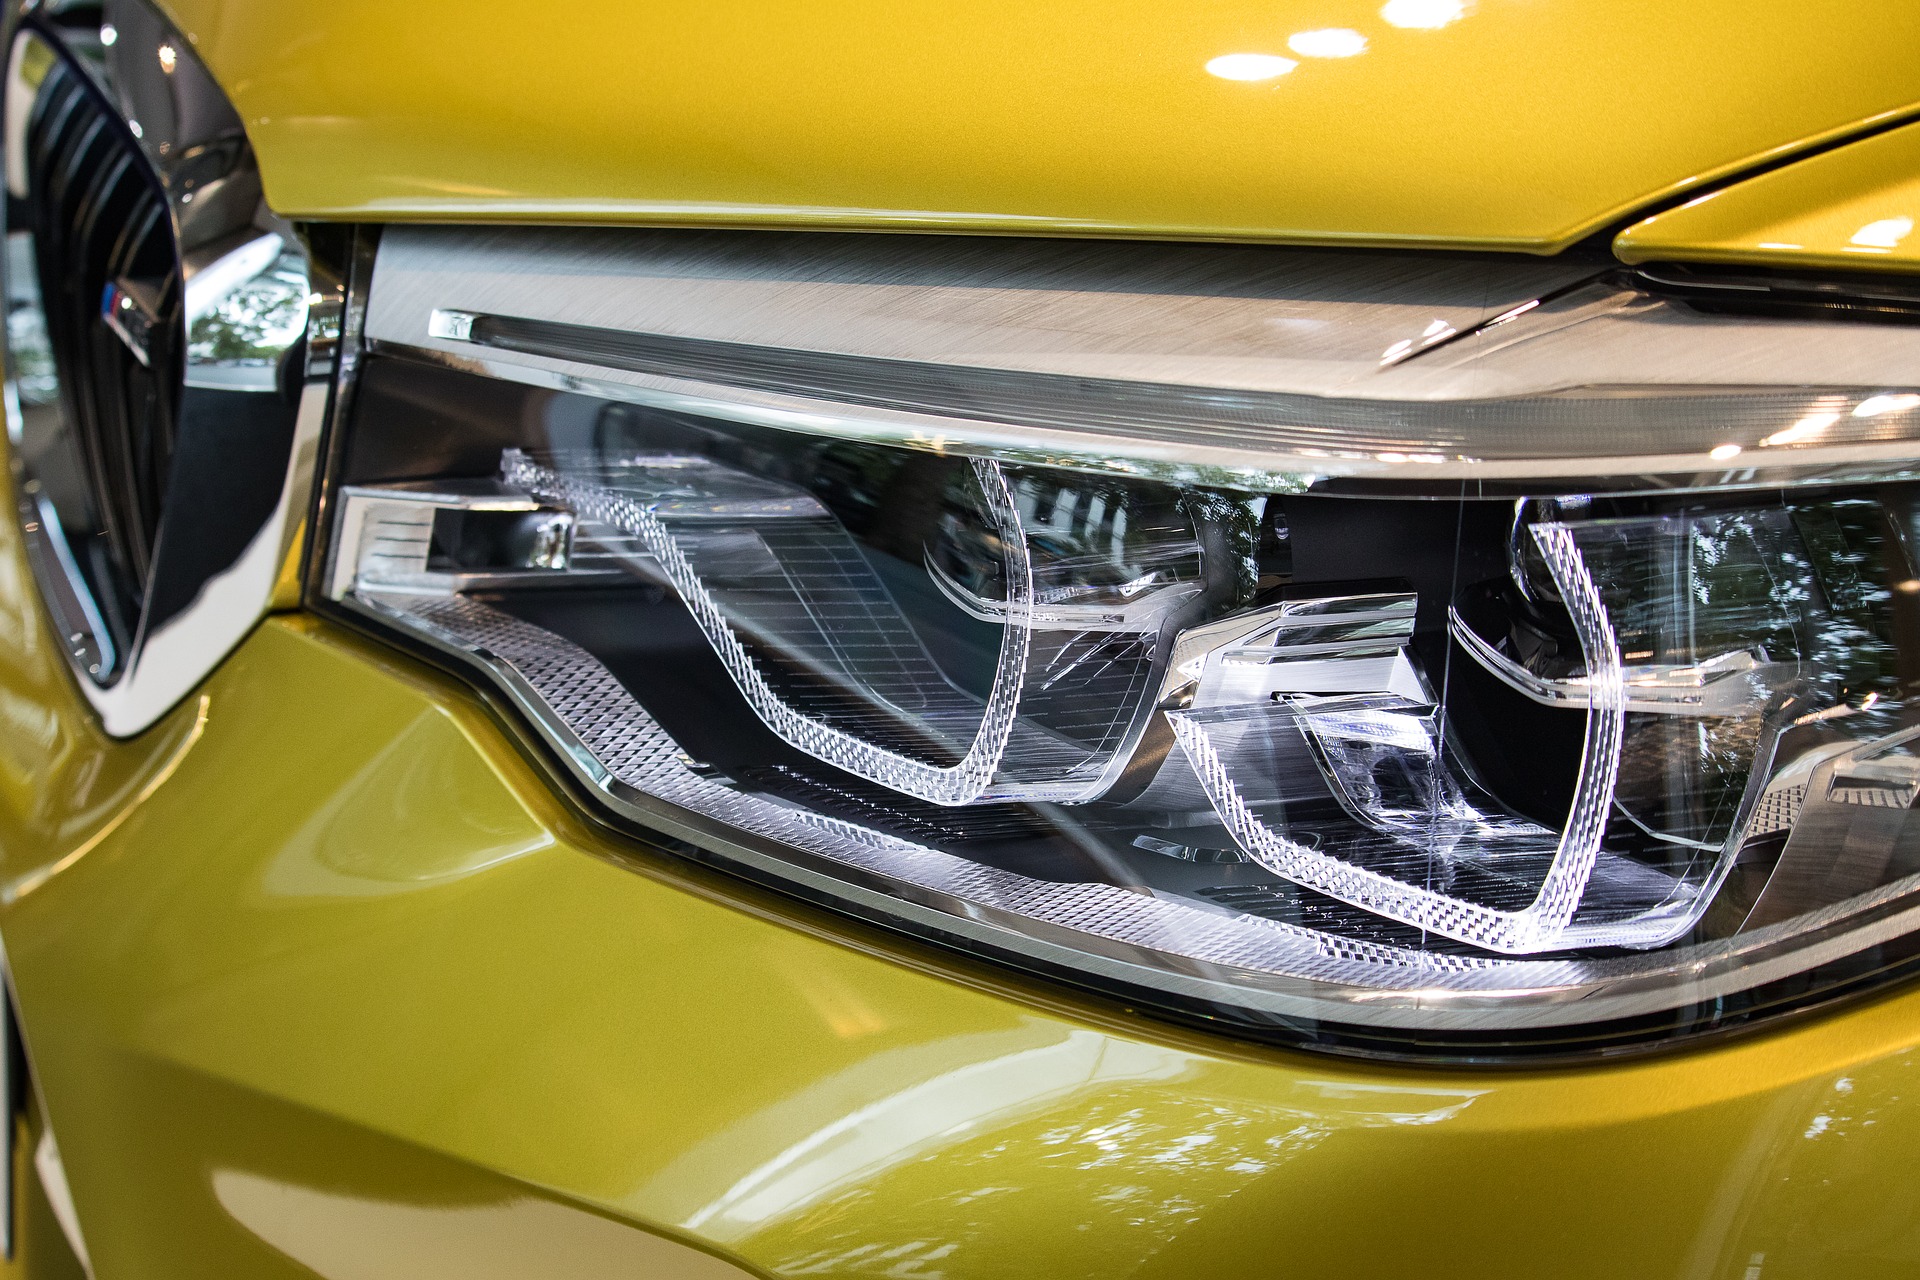 LED-Autoscheinwerfer können Blitzer-Ergebnisse verfälschen